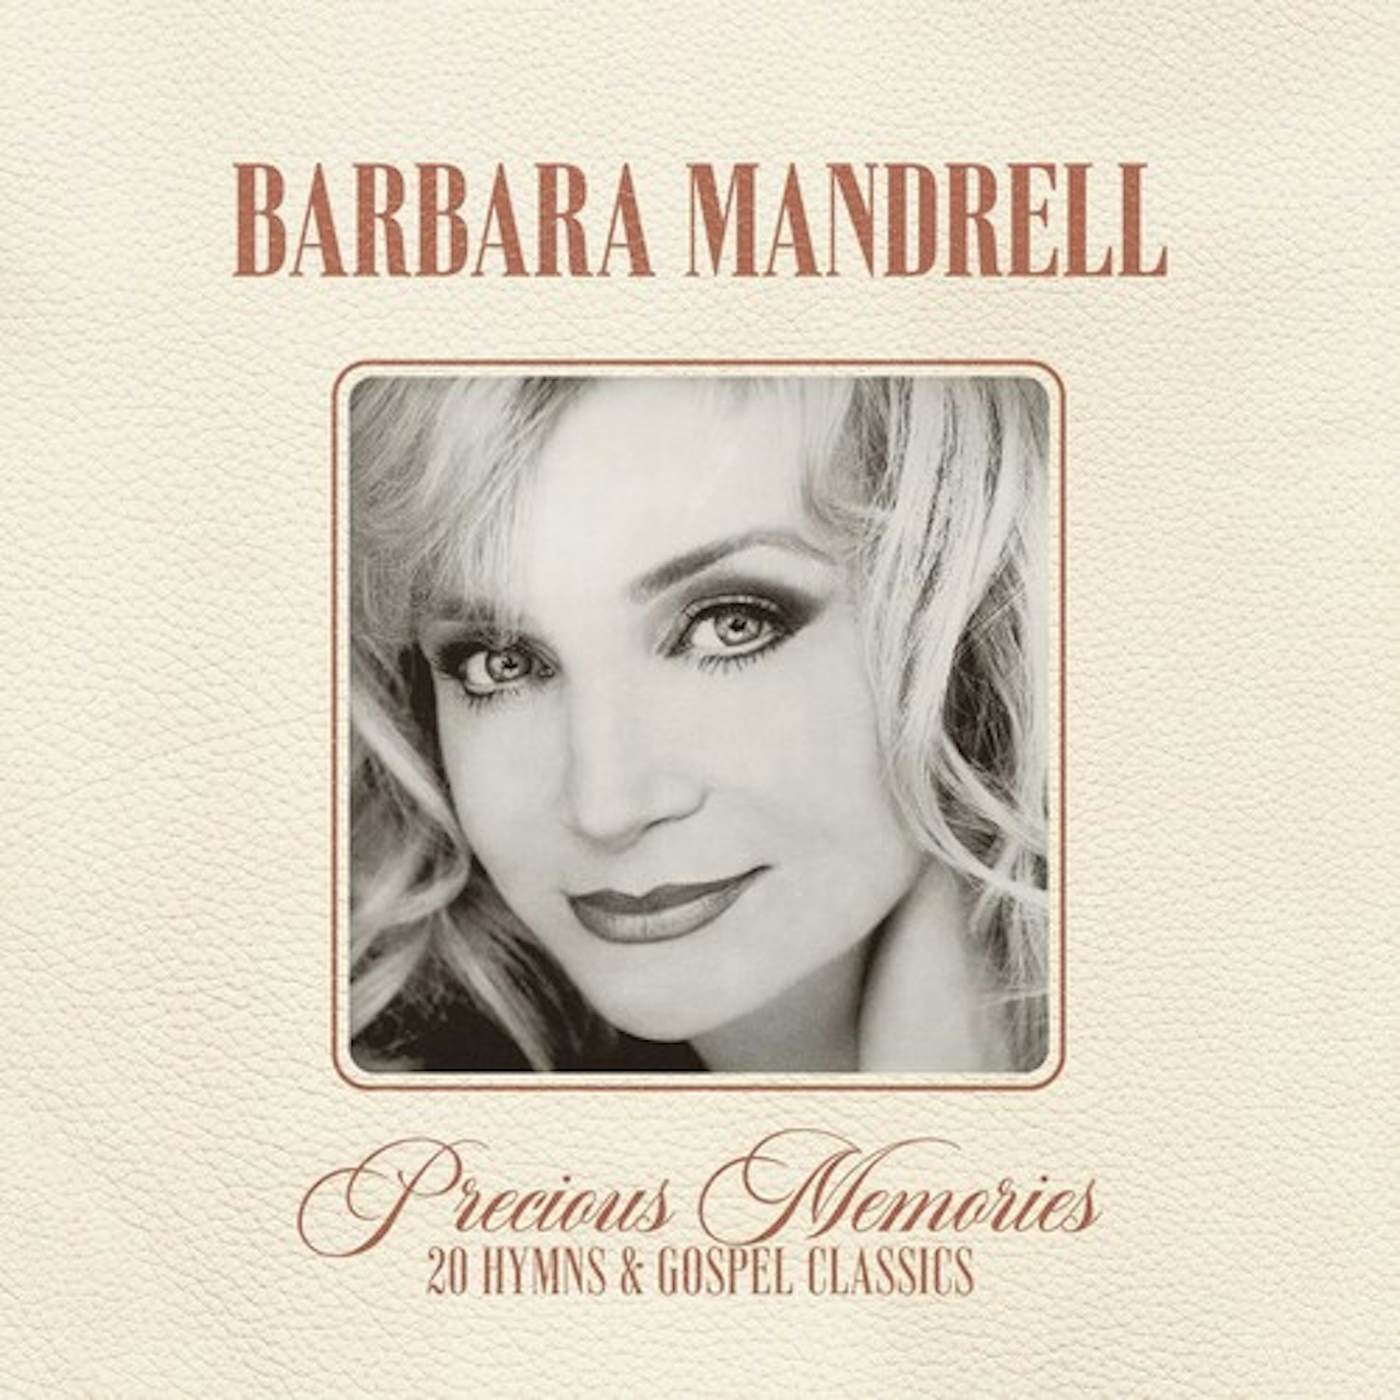 Barbara Mandrell PRECIOUS MEMORIES: 20 HYMNS AND GOSPEL CLASSICS CD